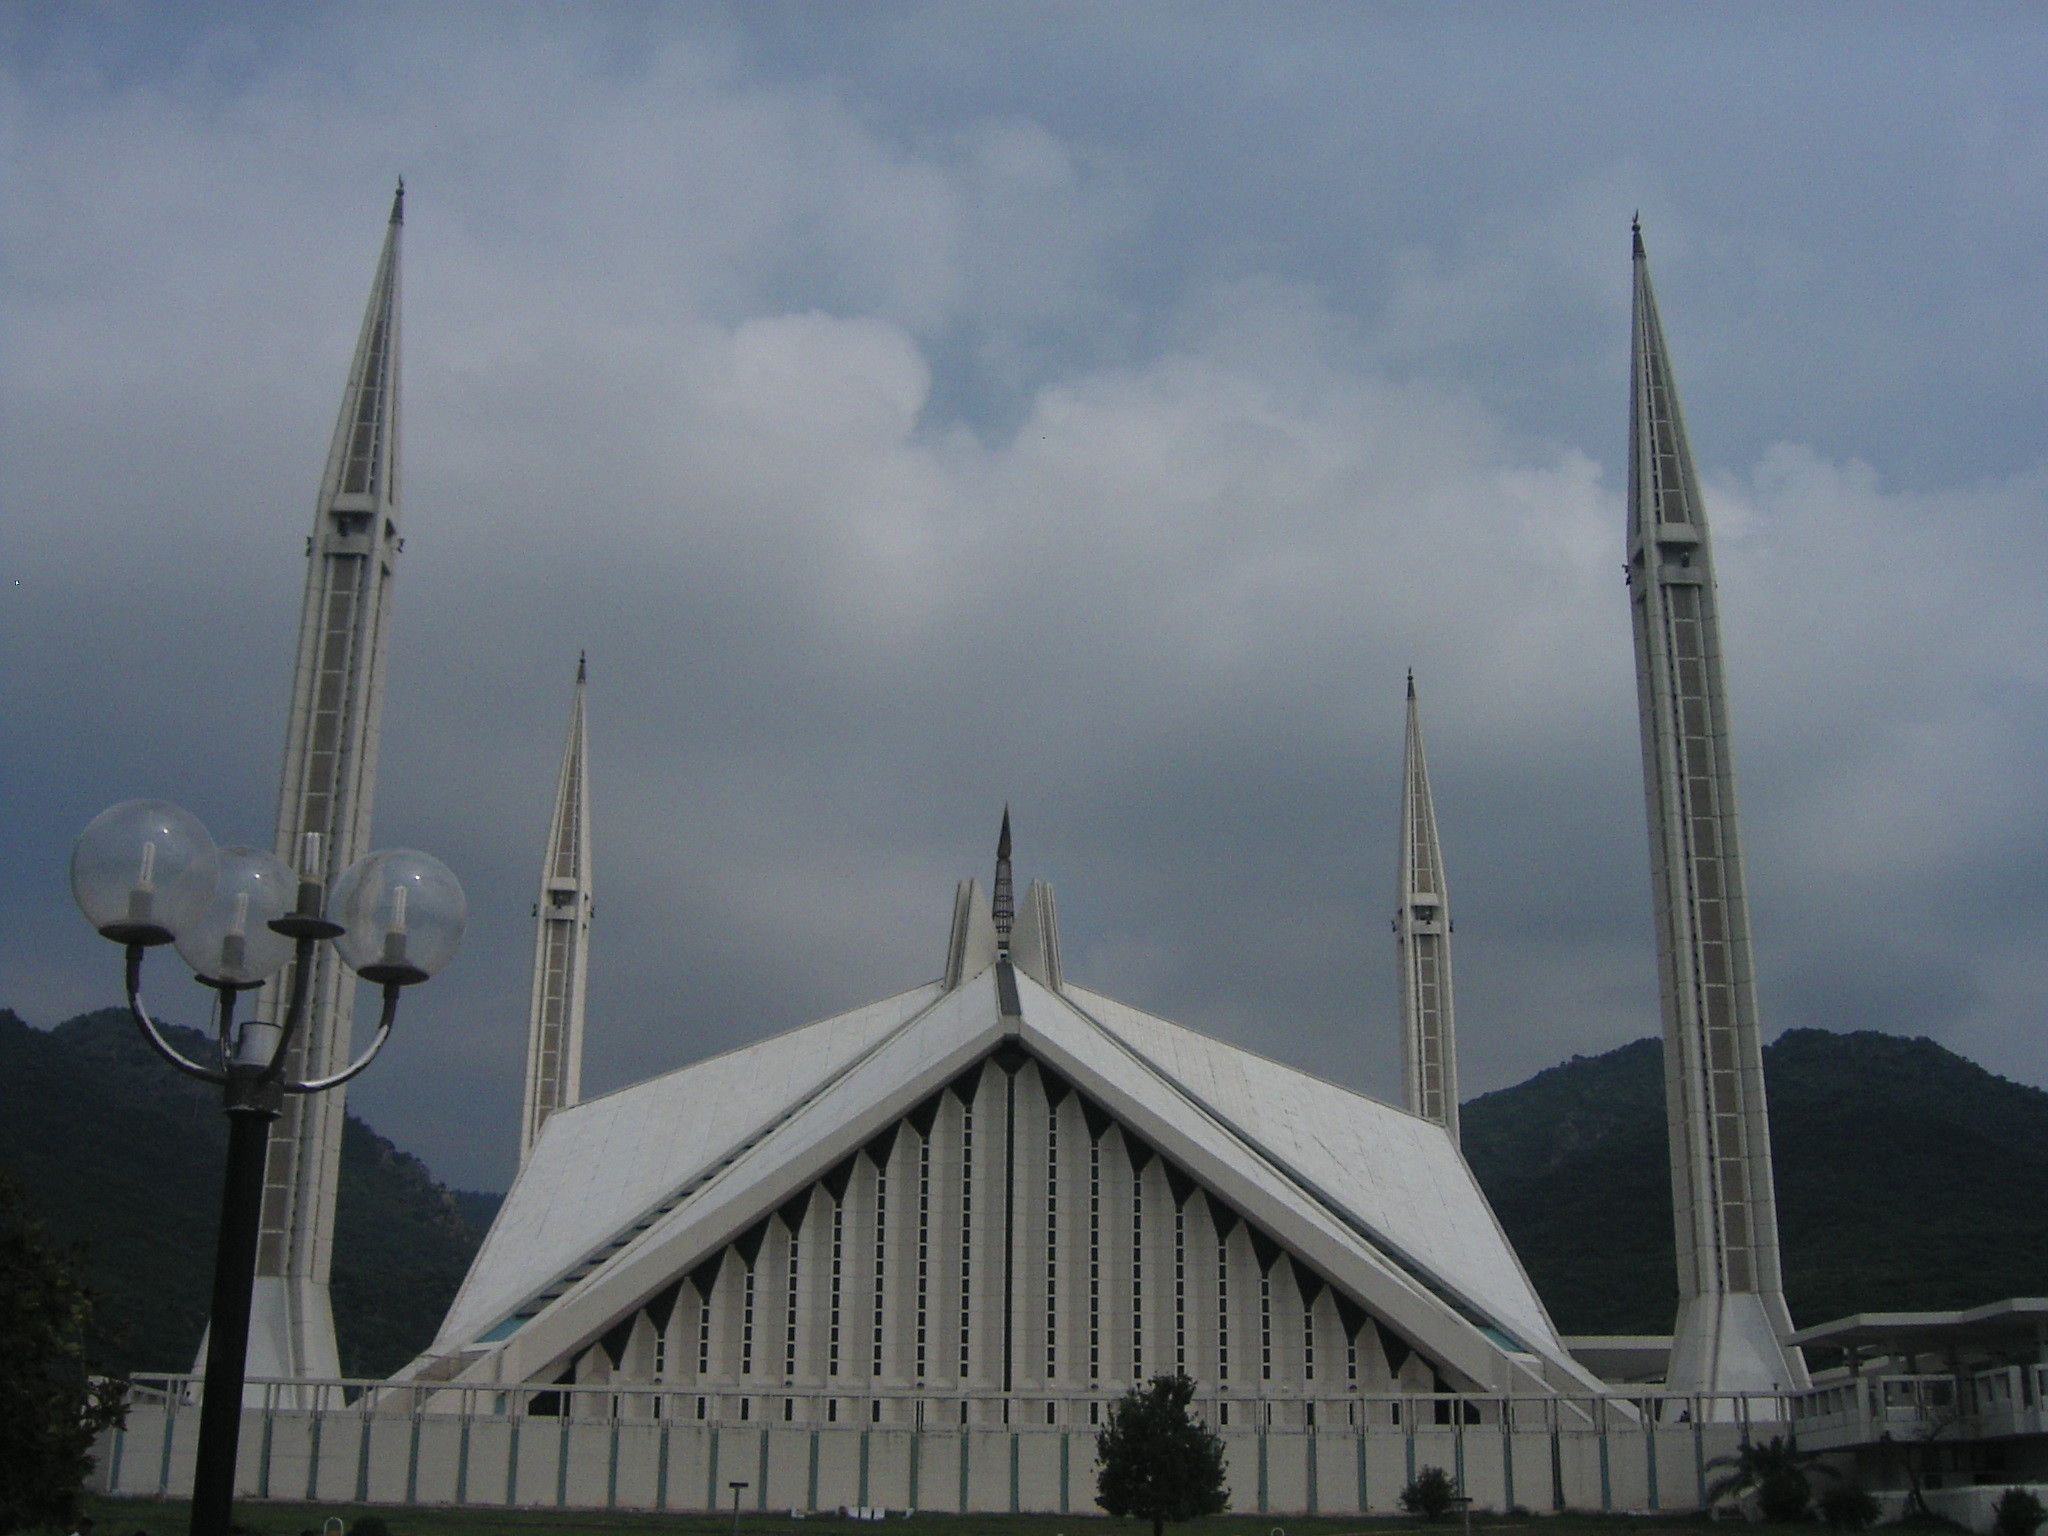 2048x1536 IslamabadâââThe Beautifulâ¥ images Faisal Masjid With A Cloudy Background HD  wallpaper and background photos